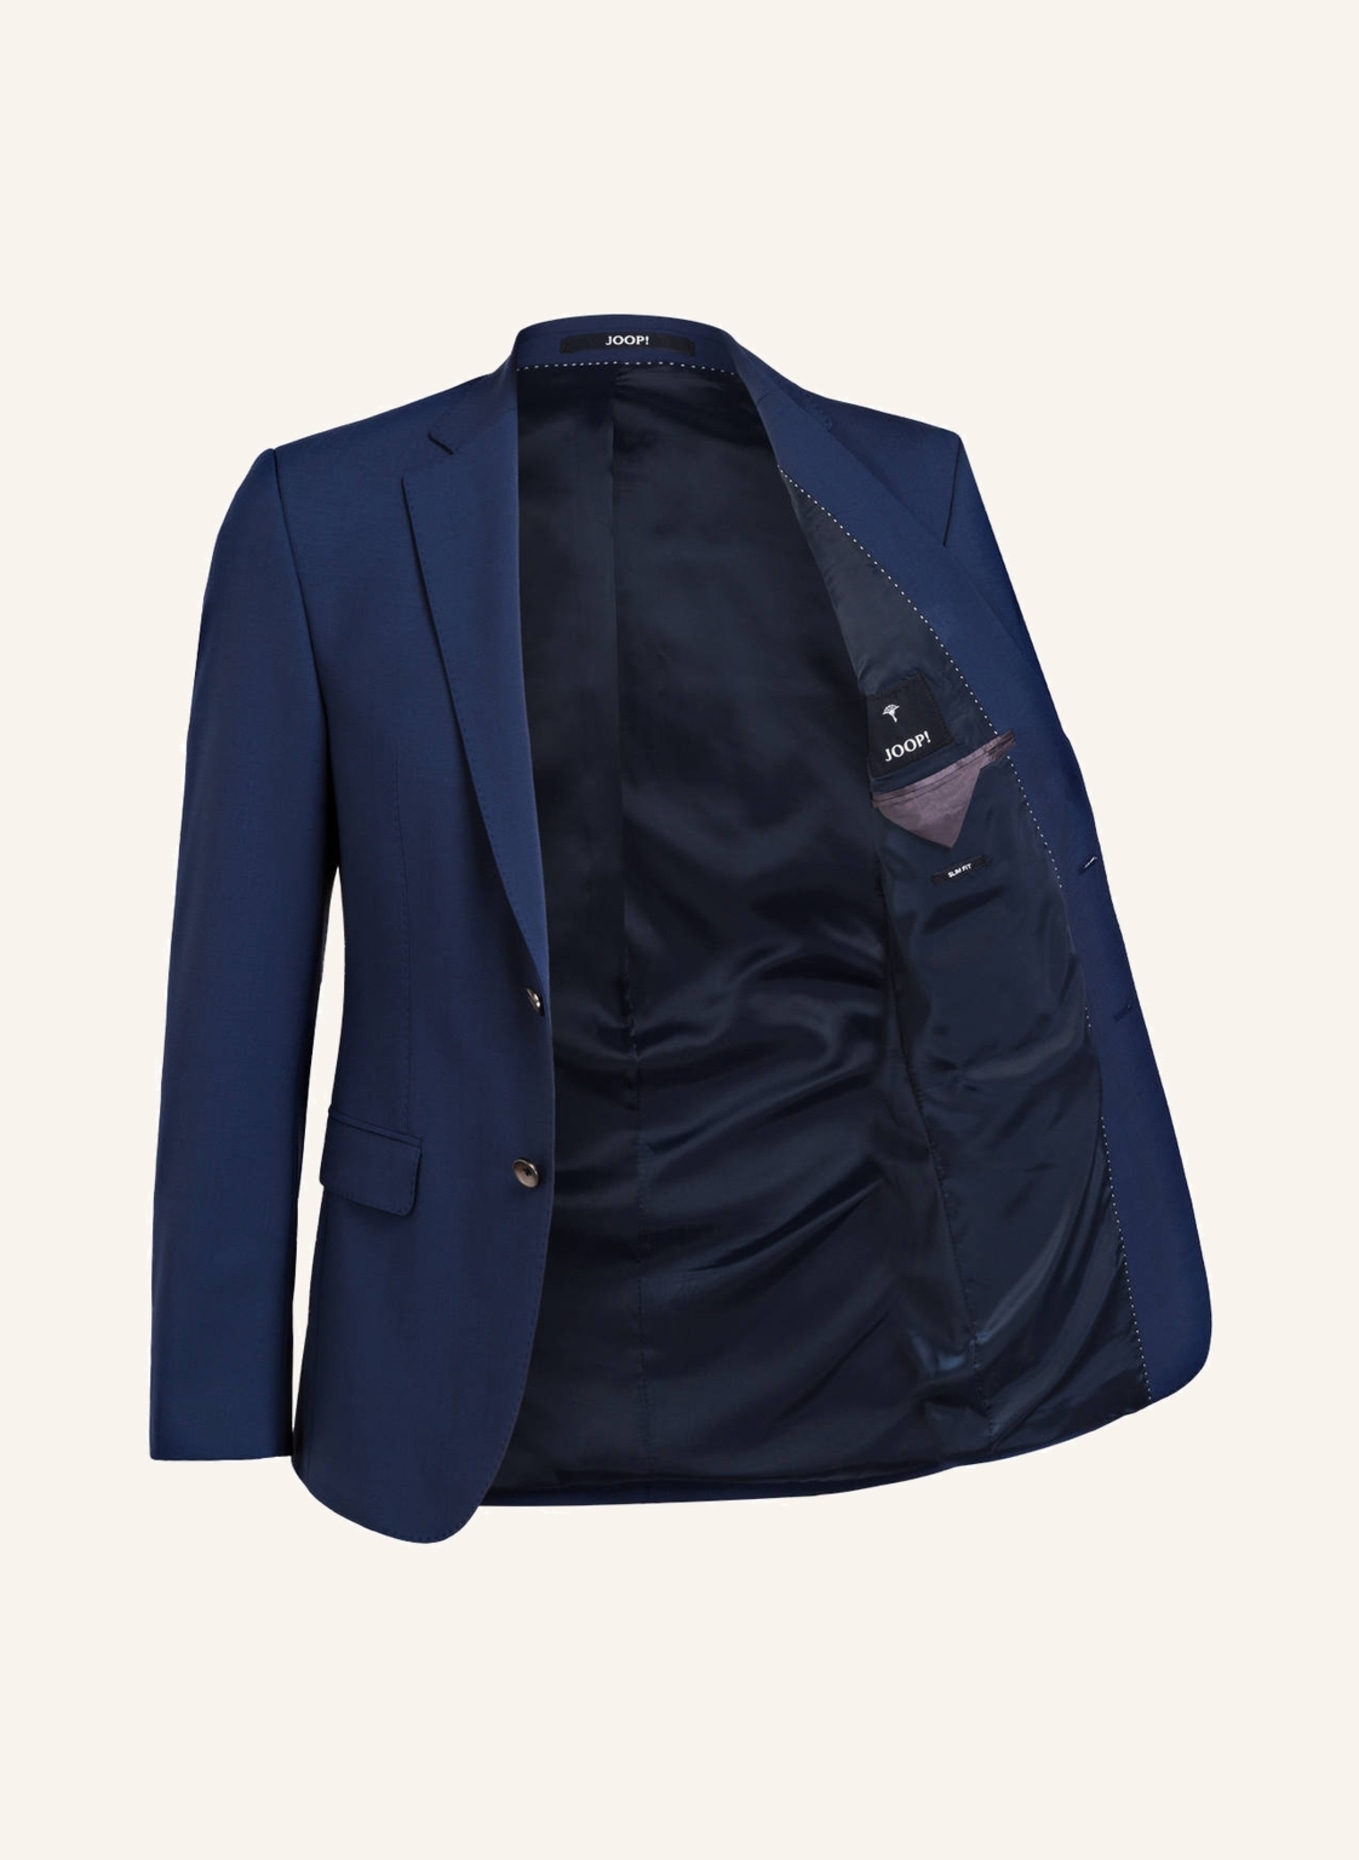 JOOP! Suit jacket HERBY slim fit, Color: 420 MEDIUM BLUE (Image 5)